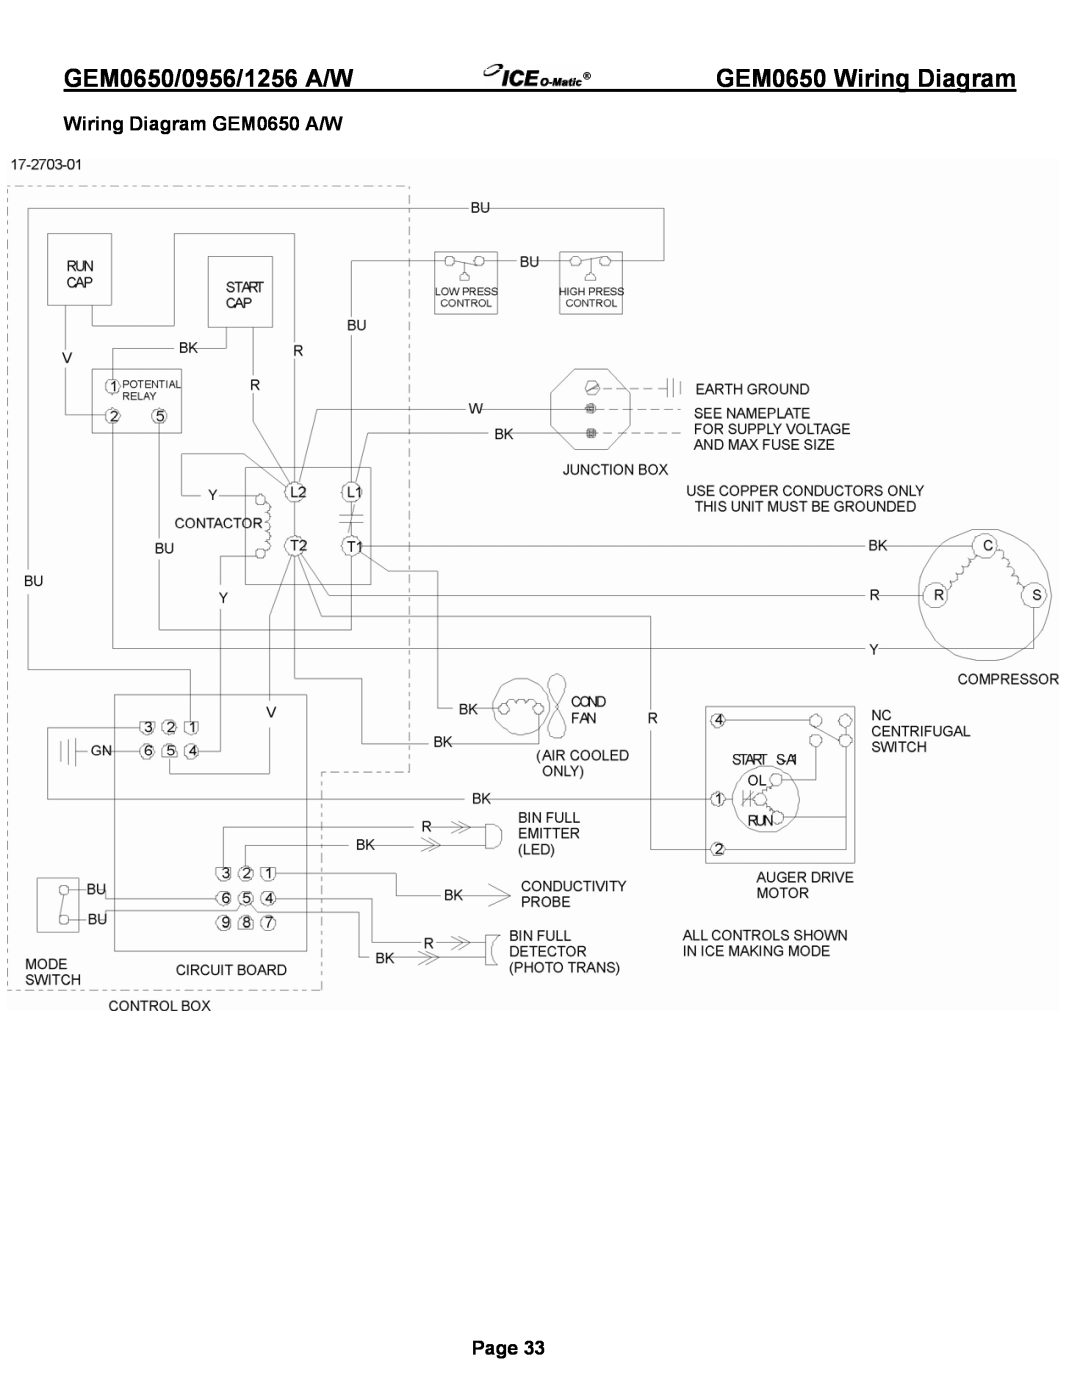 Ice-O-Matic GEM0650A/W, GEM1256A/W GEM0650 Wiring Diagram, Wiring Diagram GEM0650 A/W, GEM0650/0956/1256 A/W, Page 